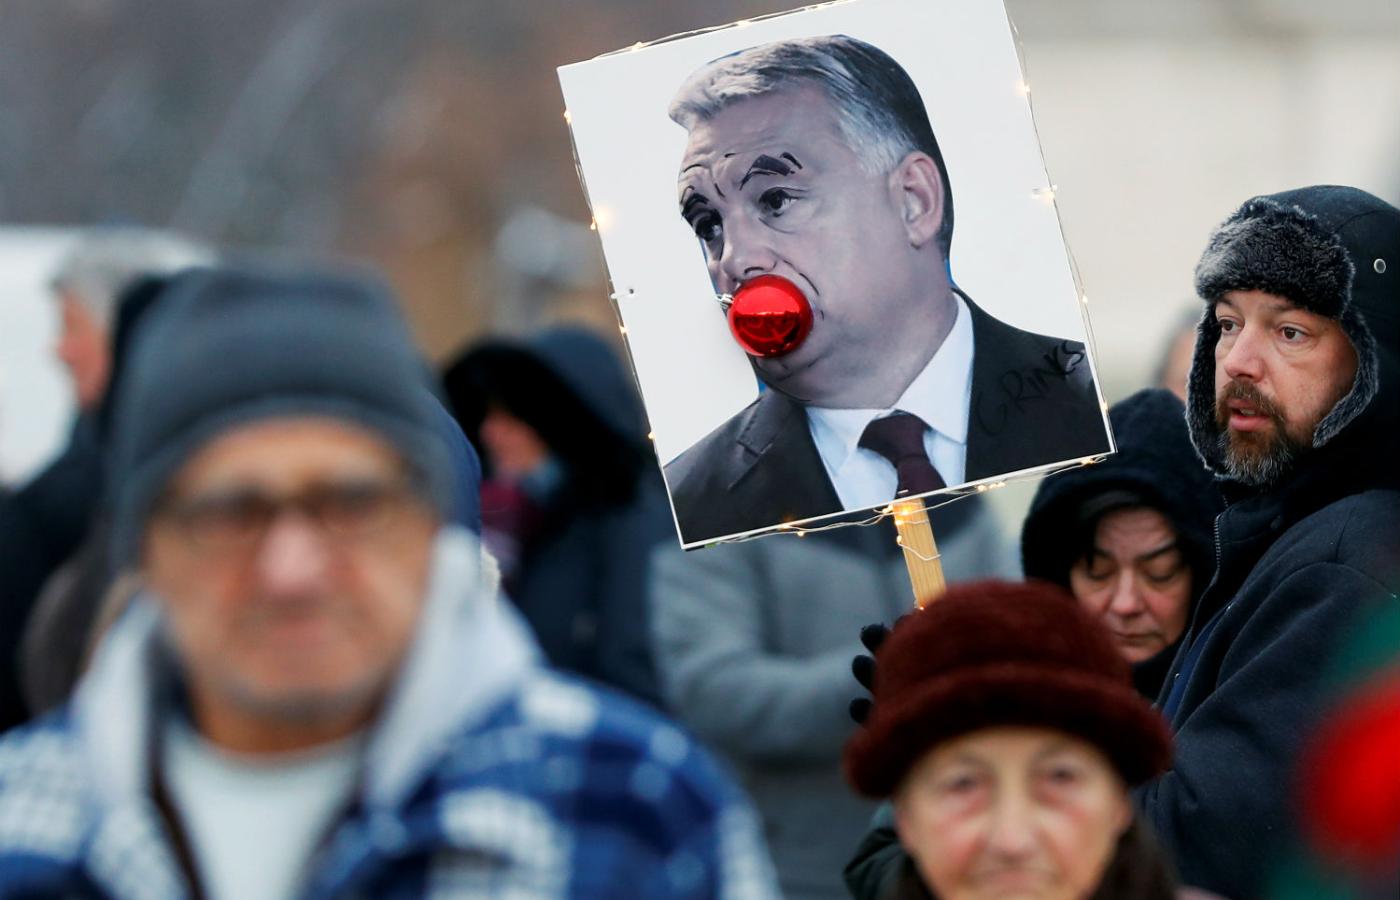 Grudniowy protest w Budapeszcie przeciwko nowym zapisom w prawie pracy zaproponowanym przez rząd Viktora Orbána.